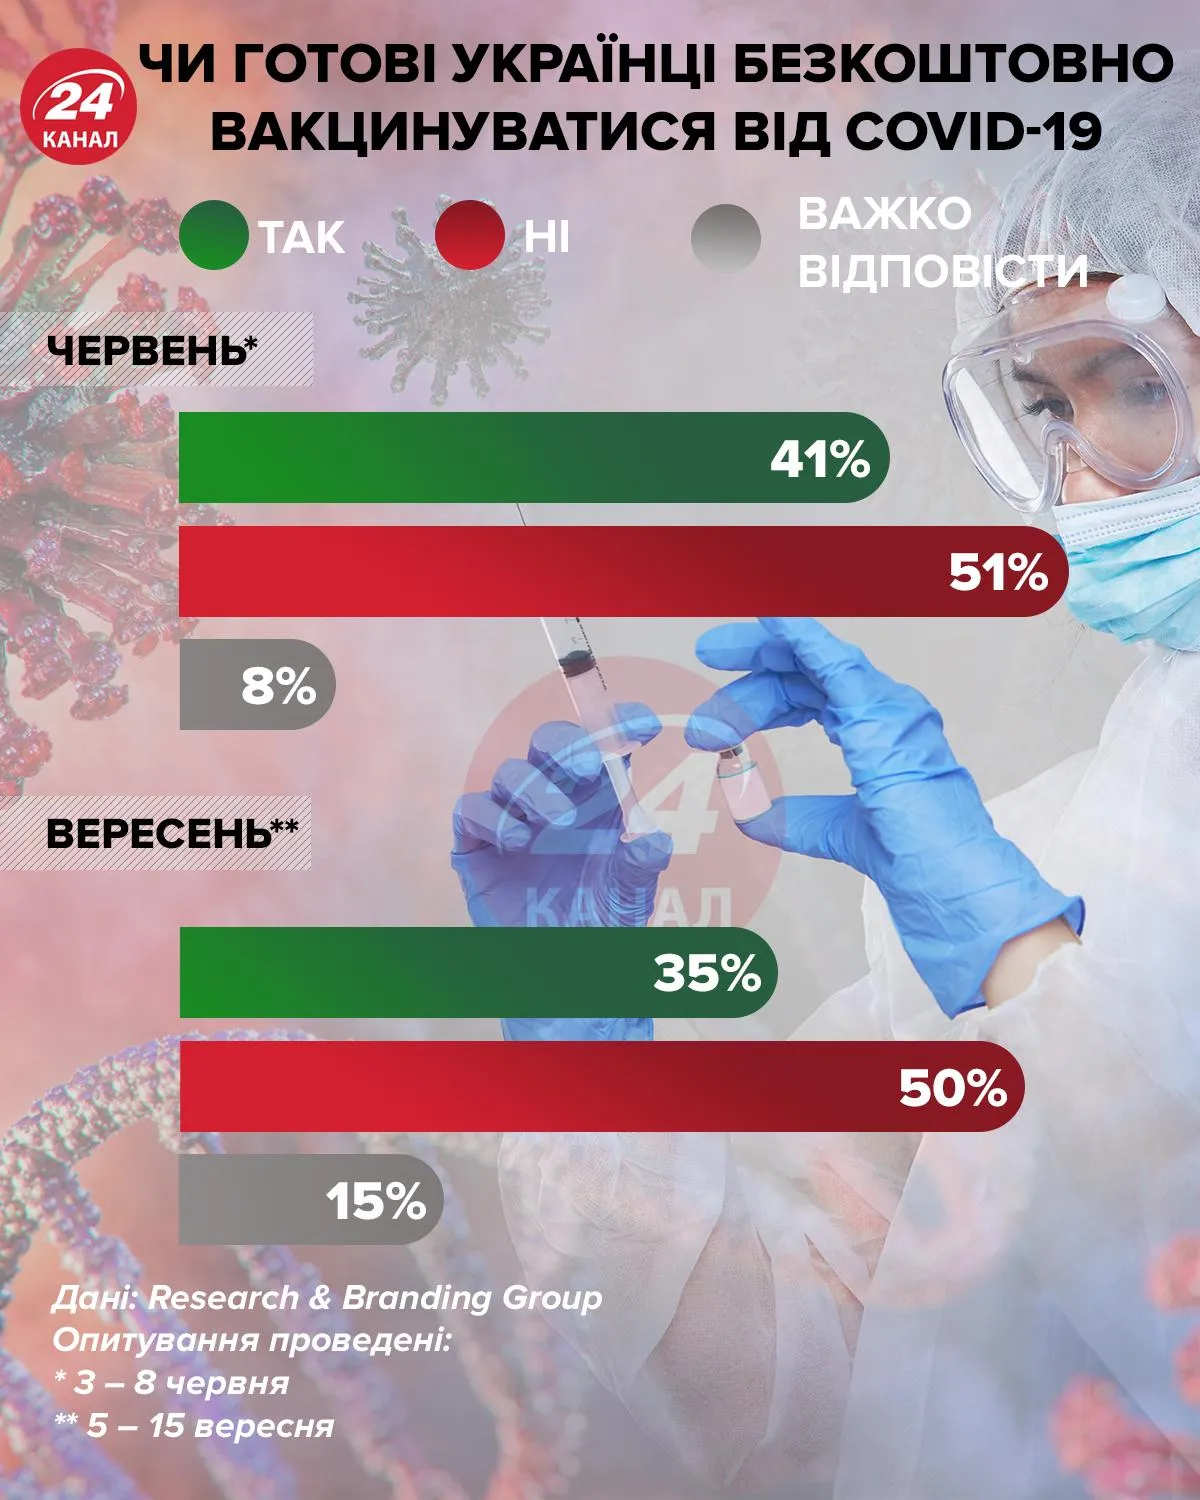 Готовы ли украинцы бесплатно прививаться от коронавируса инфографика 24 канал